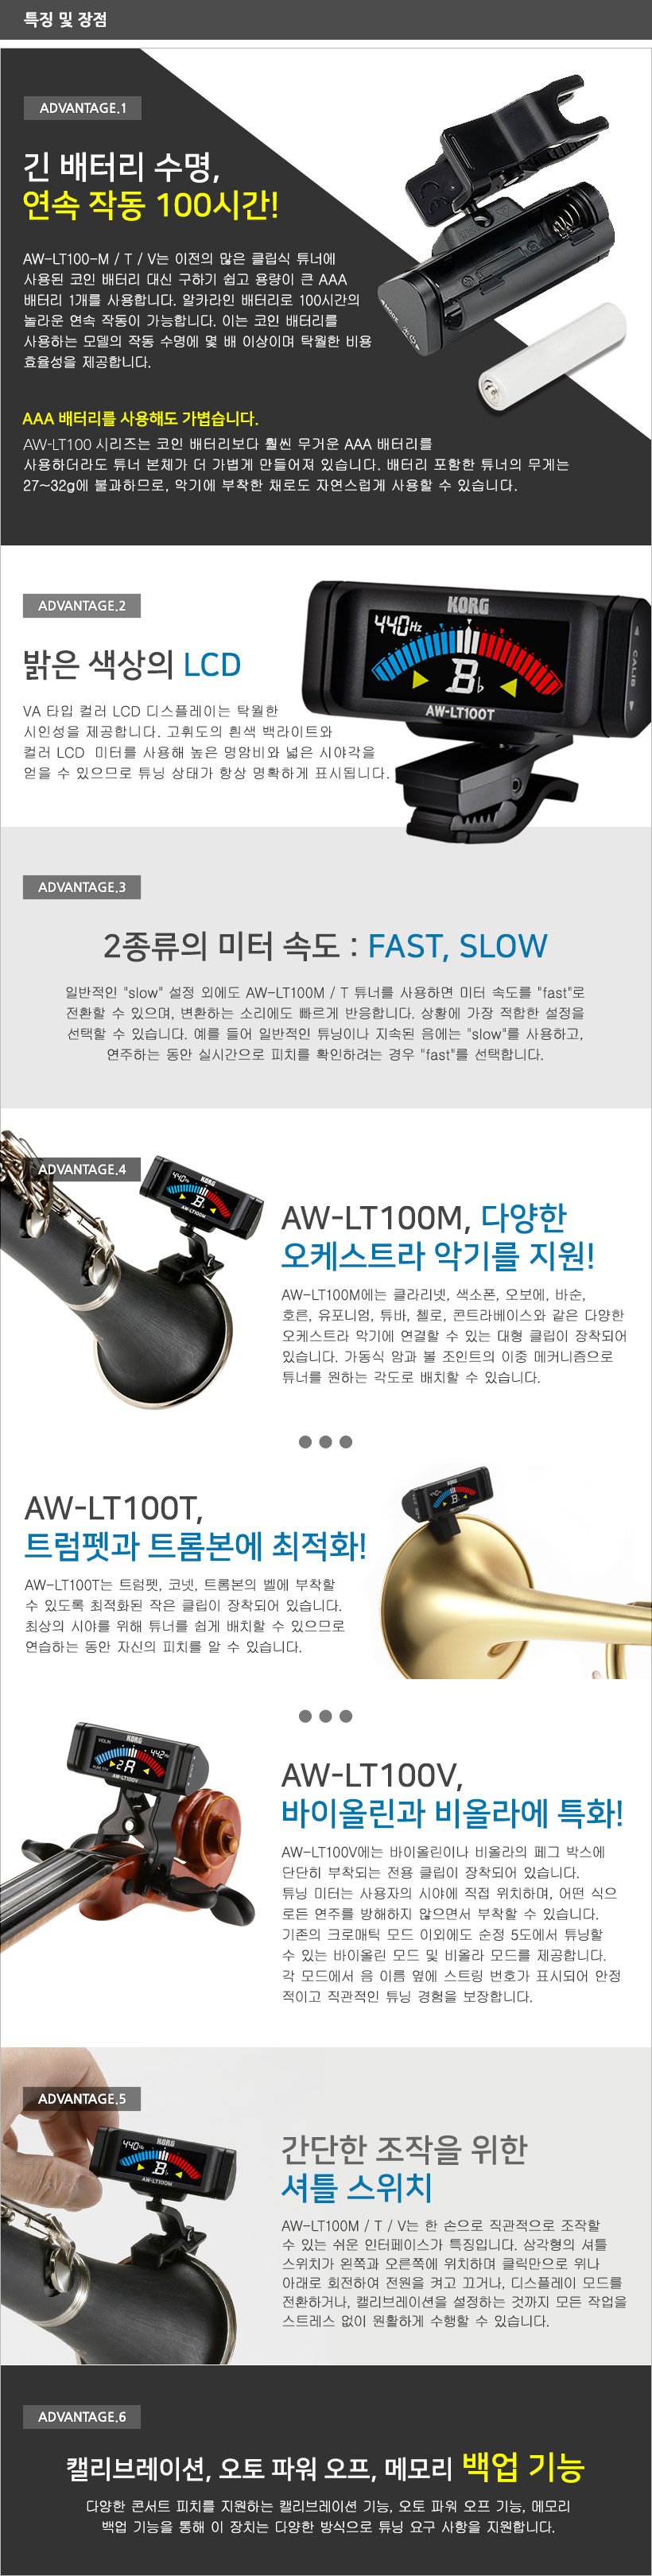 AW-LT100 특징 및 장점